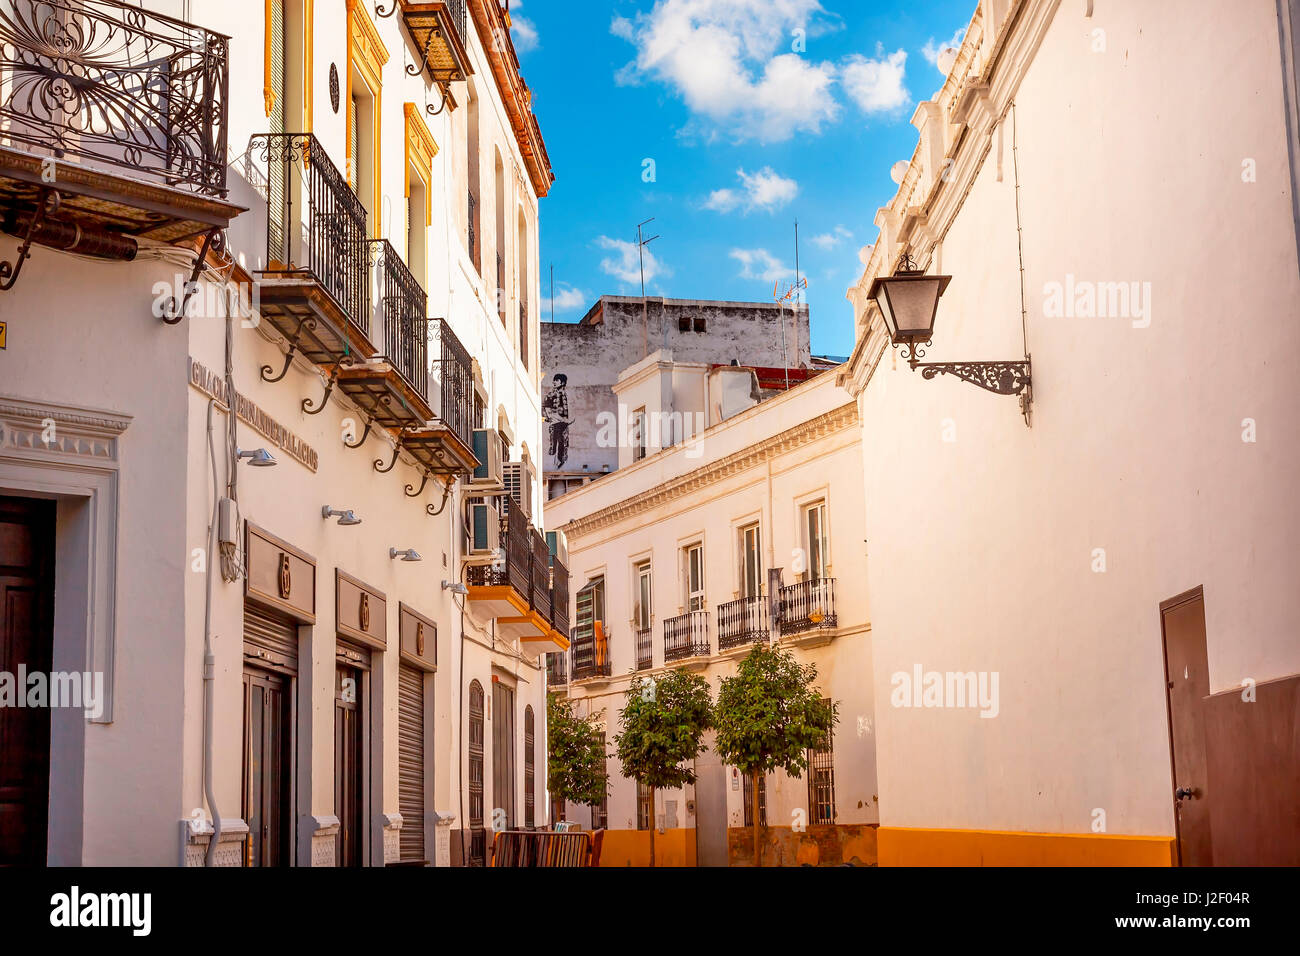 Matador Malerei schmale Strassen von Sevilla. Straße Lampe Balkon gelb weiße Stadt Blick Andalusien, Spanien. Stockfoto